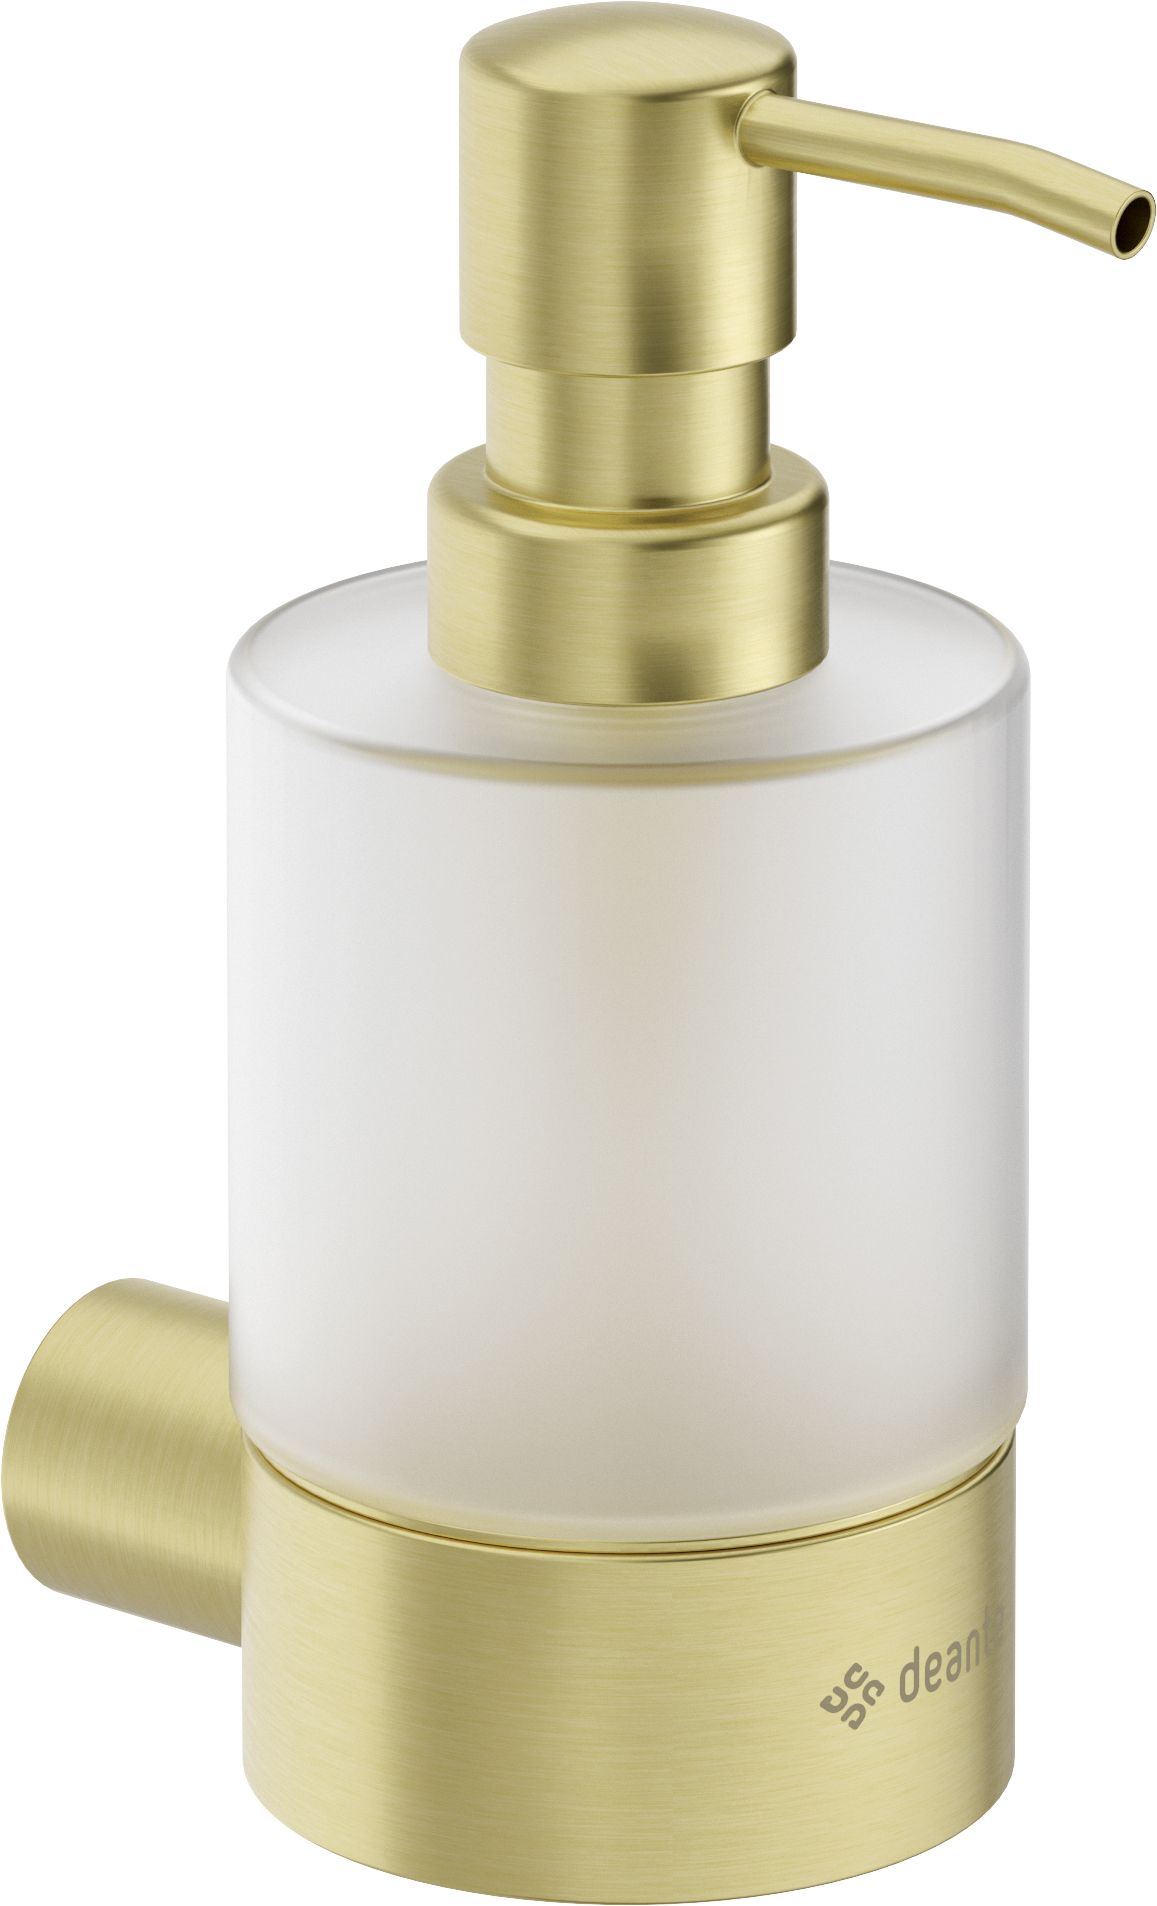 Soap dispenser - wall-mounted - ADR_R421 - Główne zdjęcie produktowe